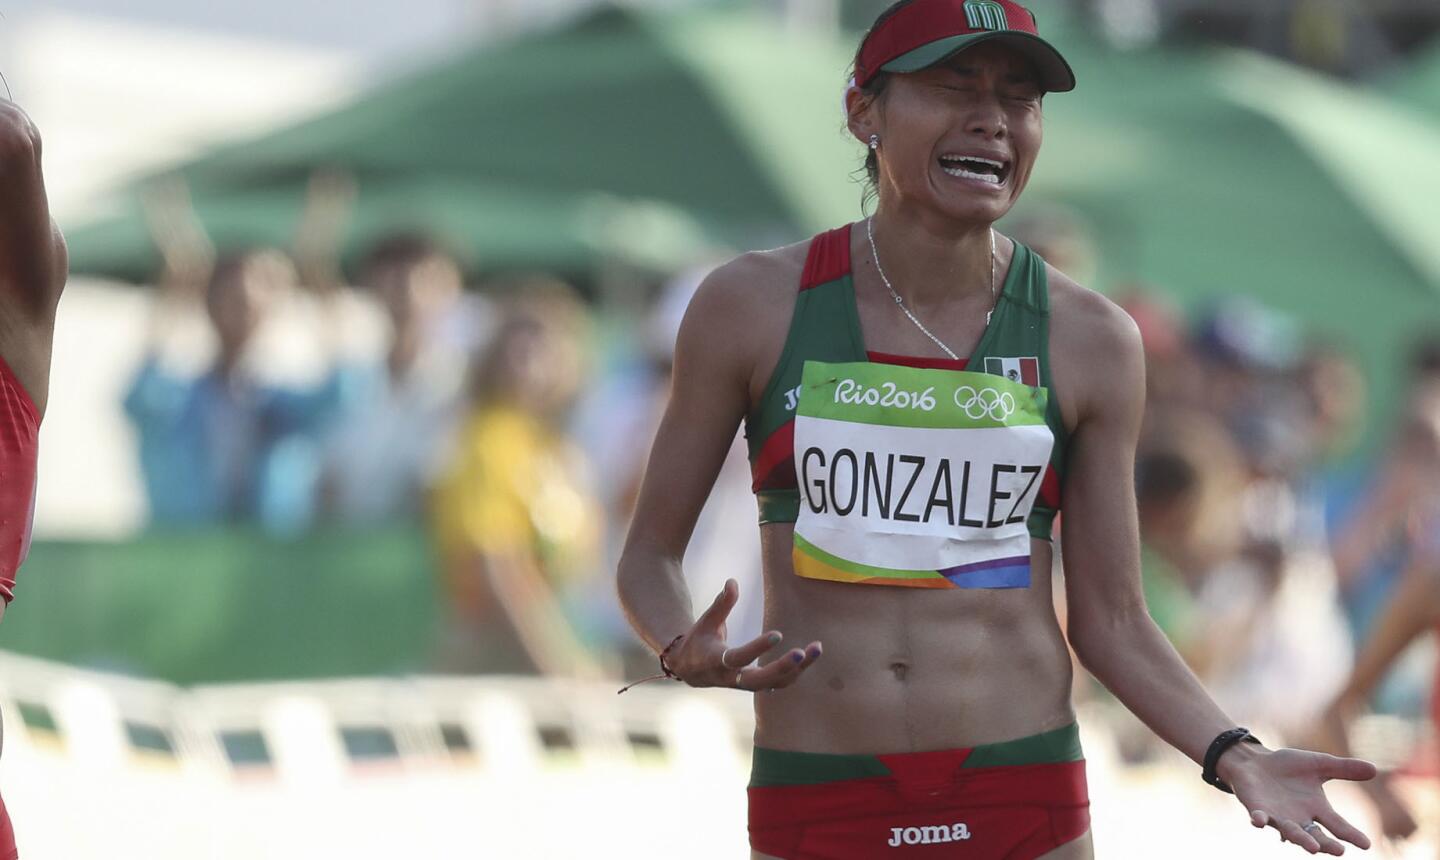 La atleta mexicana Guadalupe Gonzalez llora tras ganar la medalla de plata en la competencia de marcha 20km femenino en Río 2016.